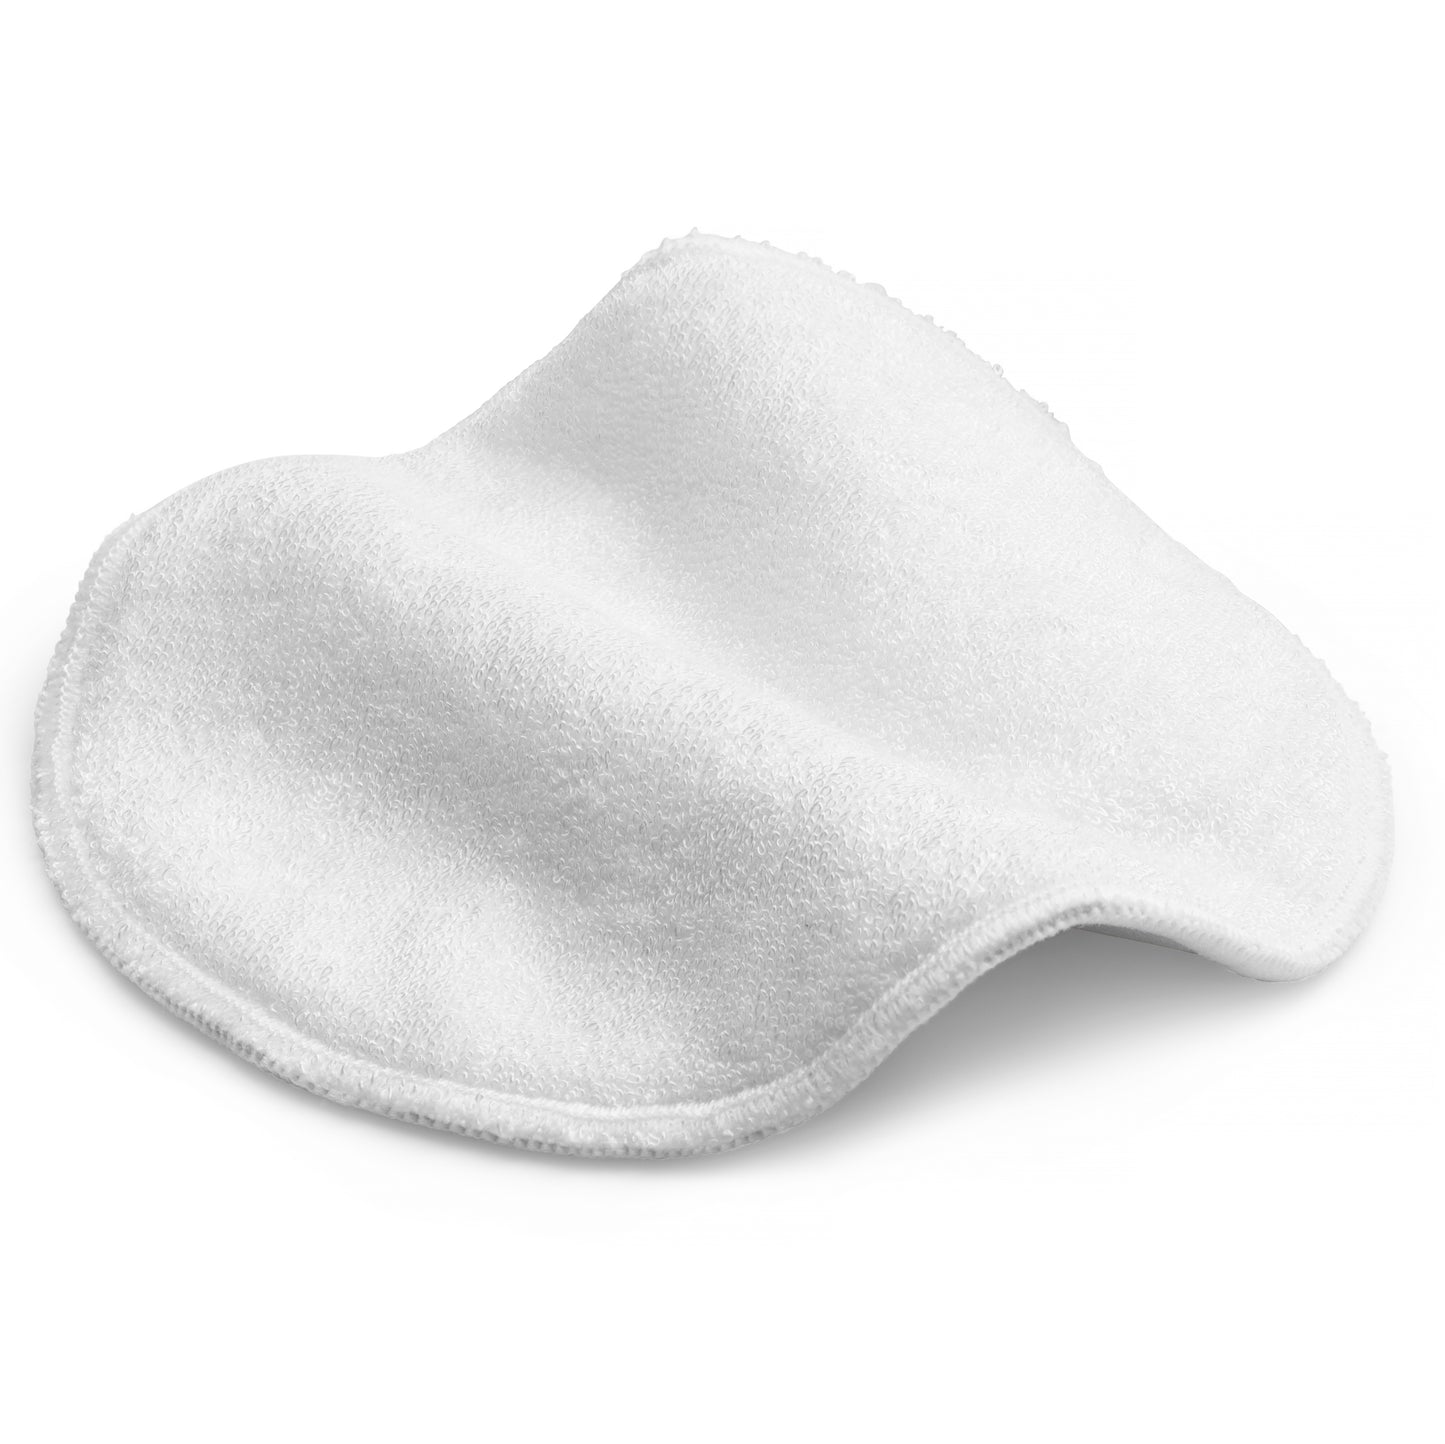 Jubilee Bundle - 14 pads of cloth nursing pads